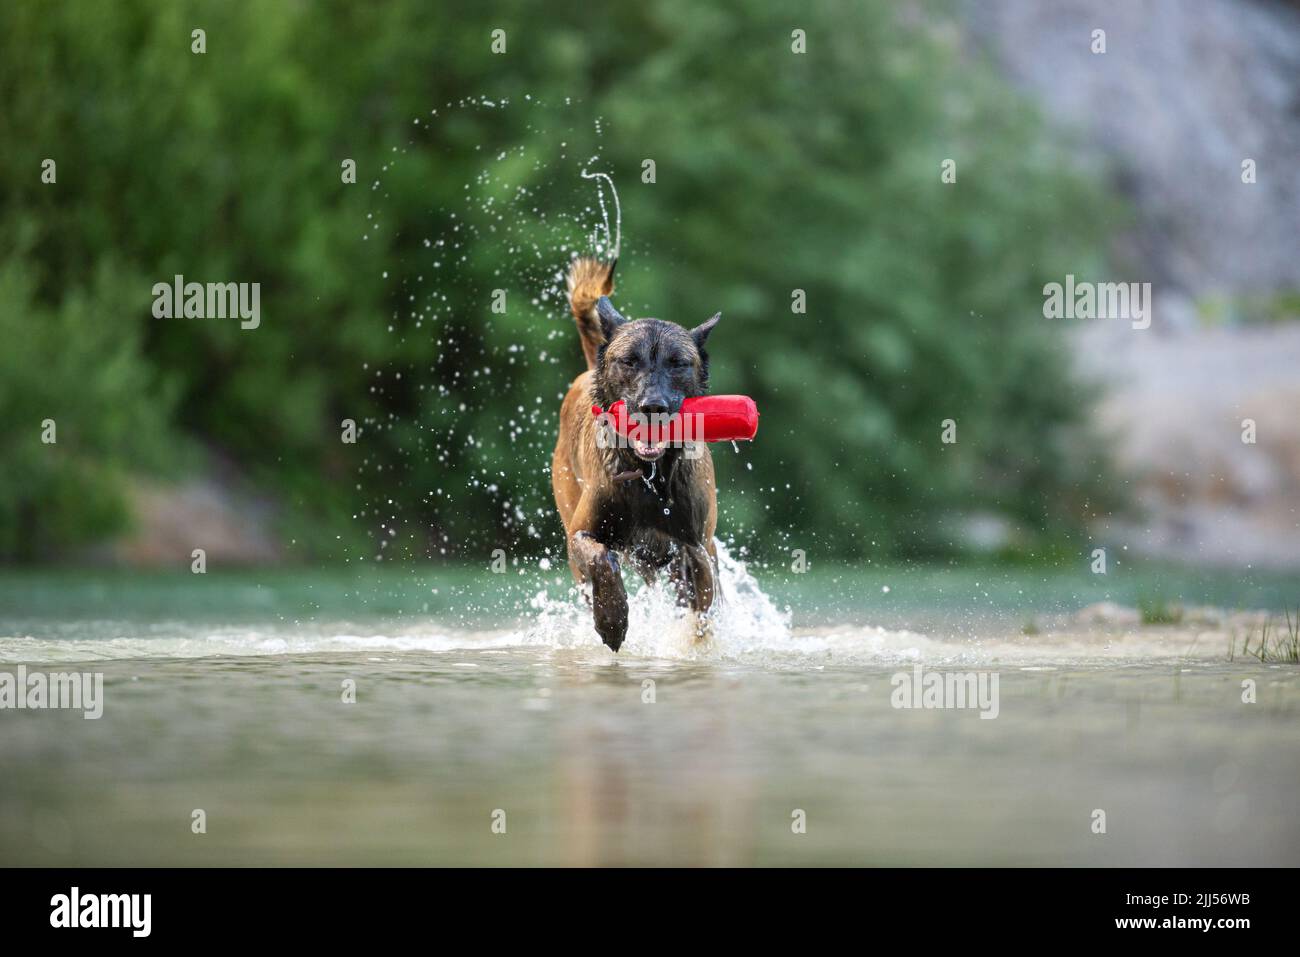 Bel cane pastore malinois maschio purredi belga che corre nell'acqua del lago con un giocattolo rosso in bocca. Foto Stock